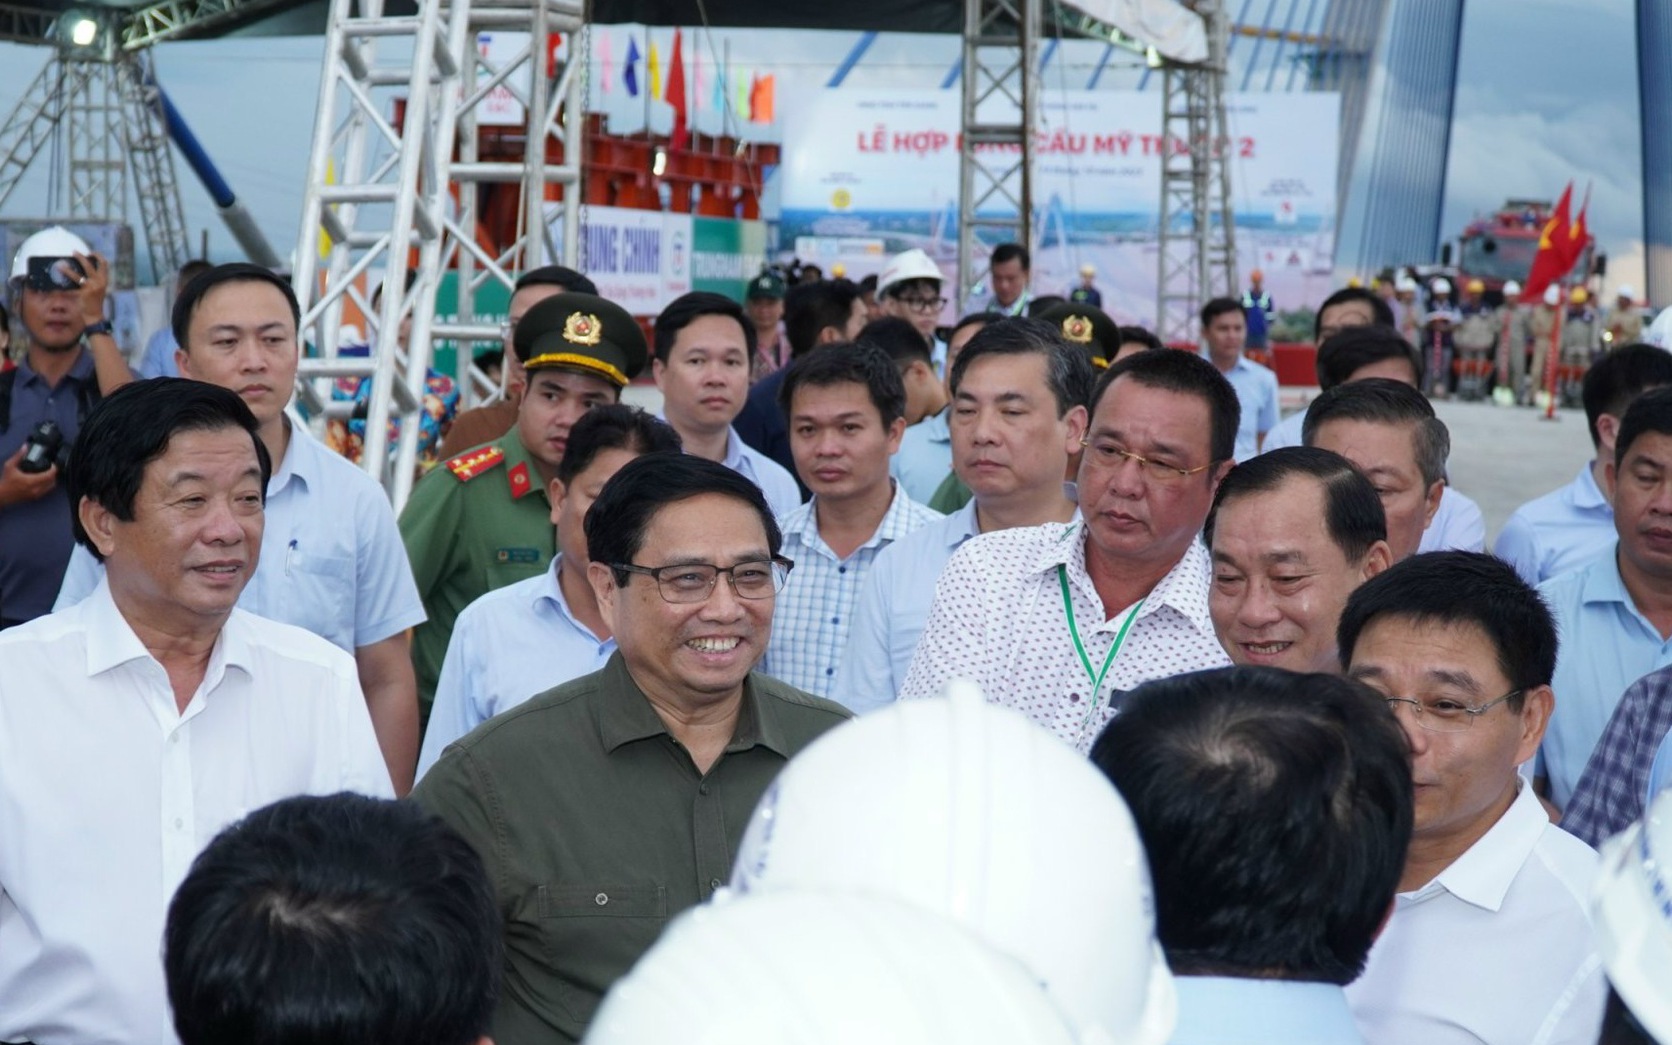 Video: Thủ tướng Phạm Minh Chính dự lễ hợp long cầu Mỹ Thuận 2